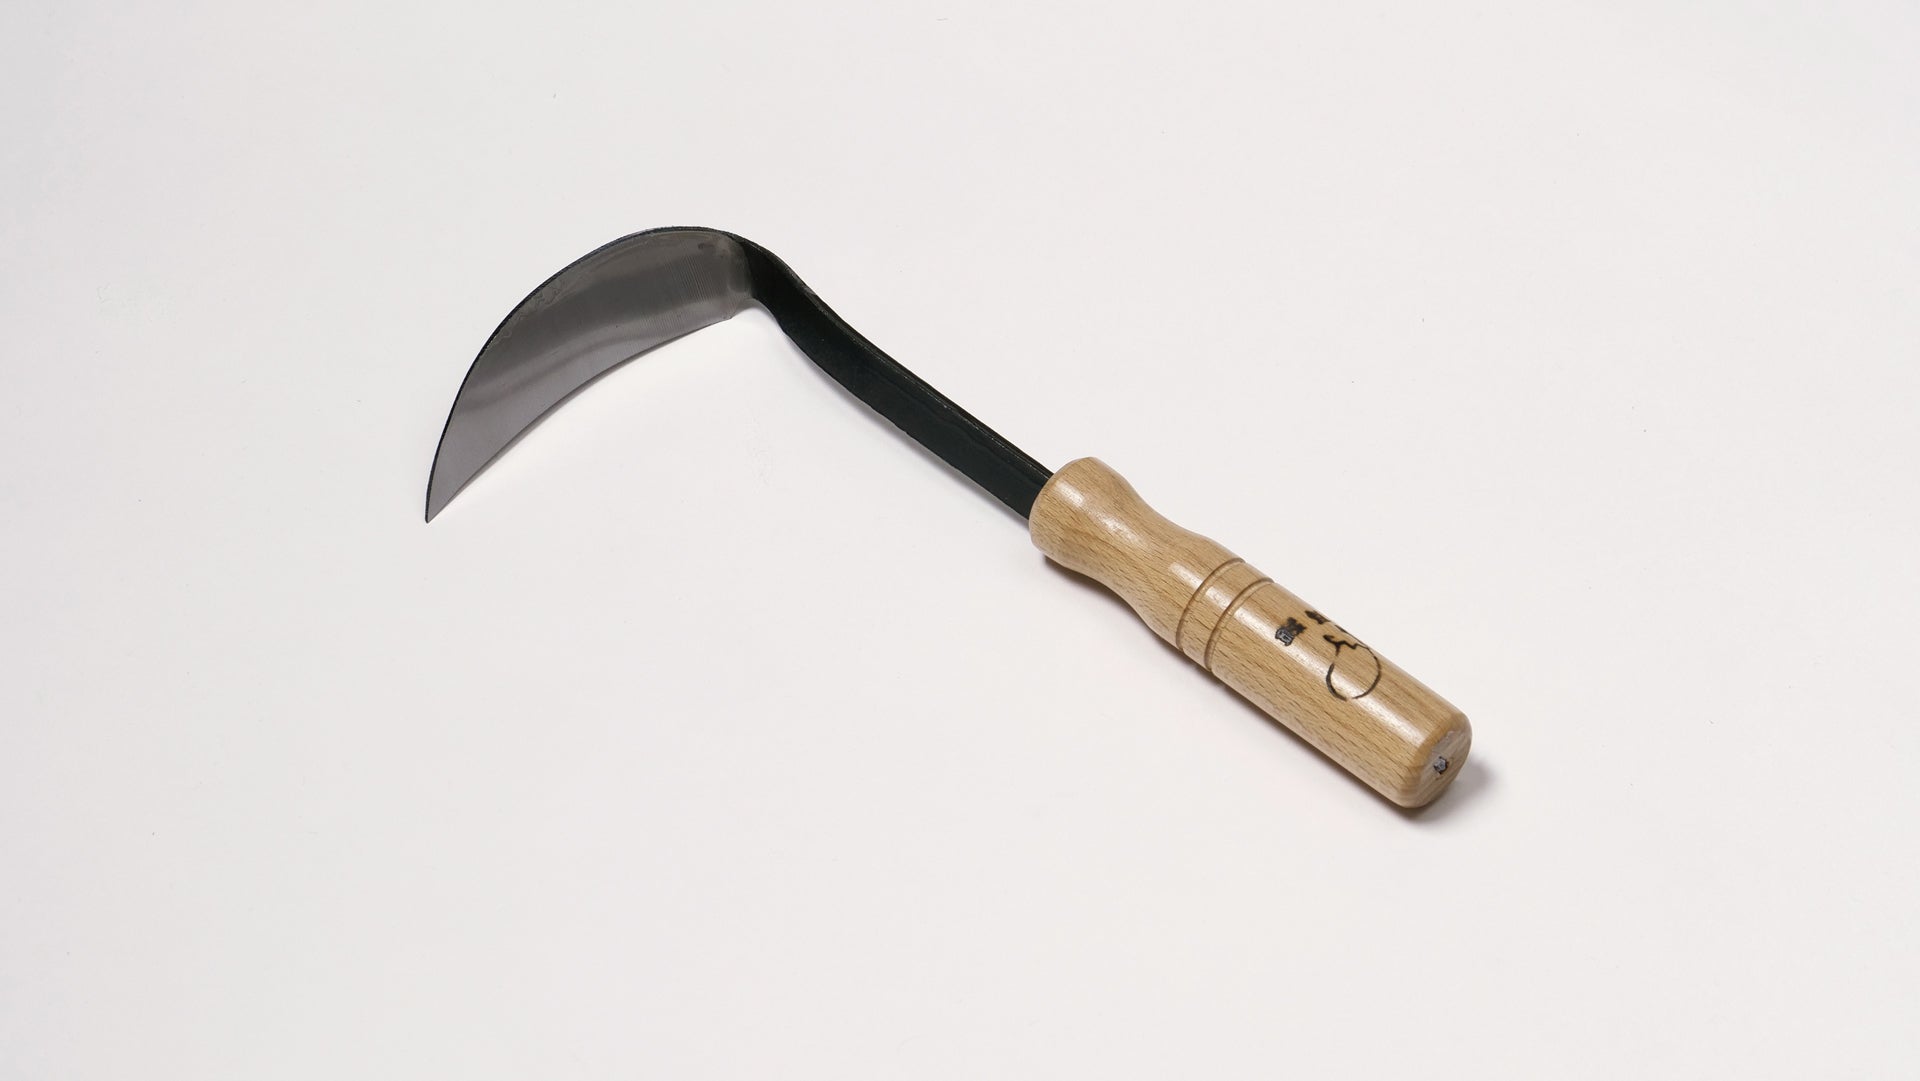 Nasu Kana Scraper, Hand Hoe for Gardening - Japanese Gardening Tools